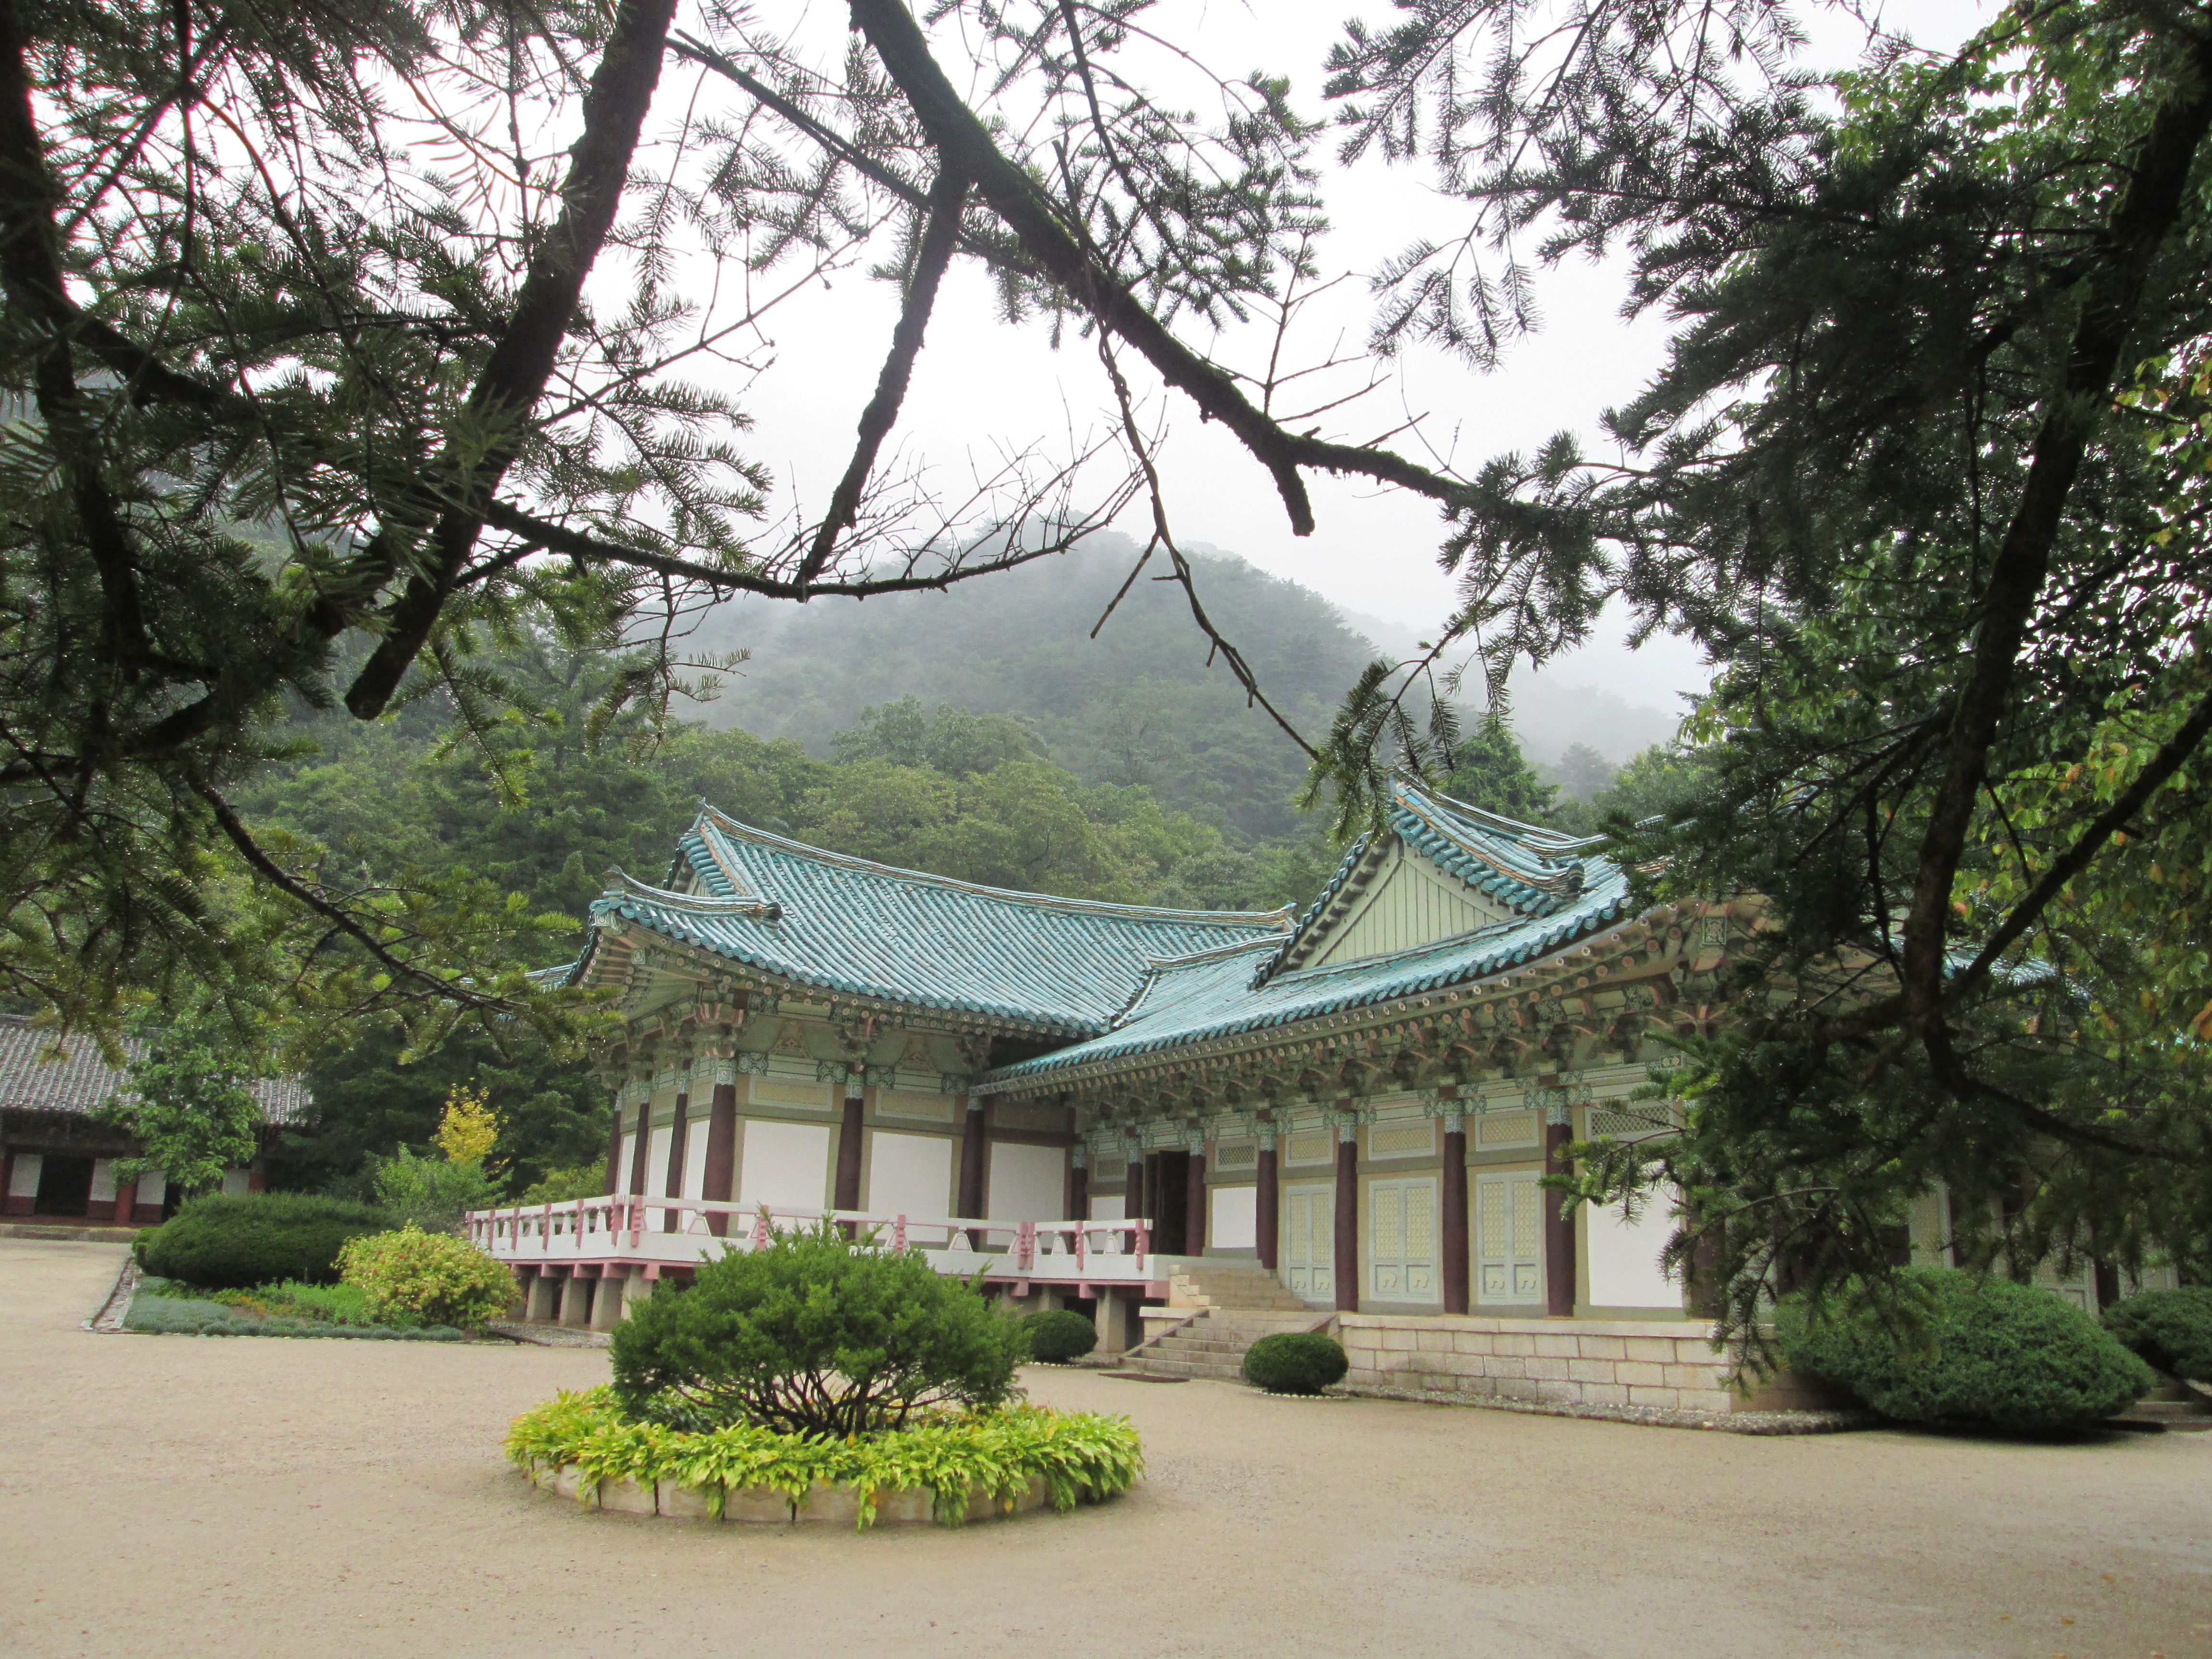 Durch eine Baumkrone blickt man auf ein historisch aussehendes, tempelartiges Gebäude, welches ein Museum beinhaltet.